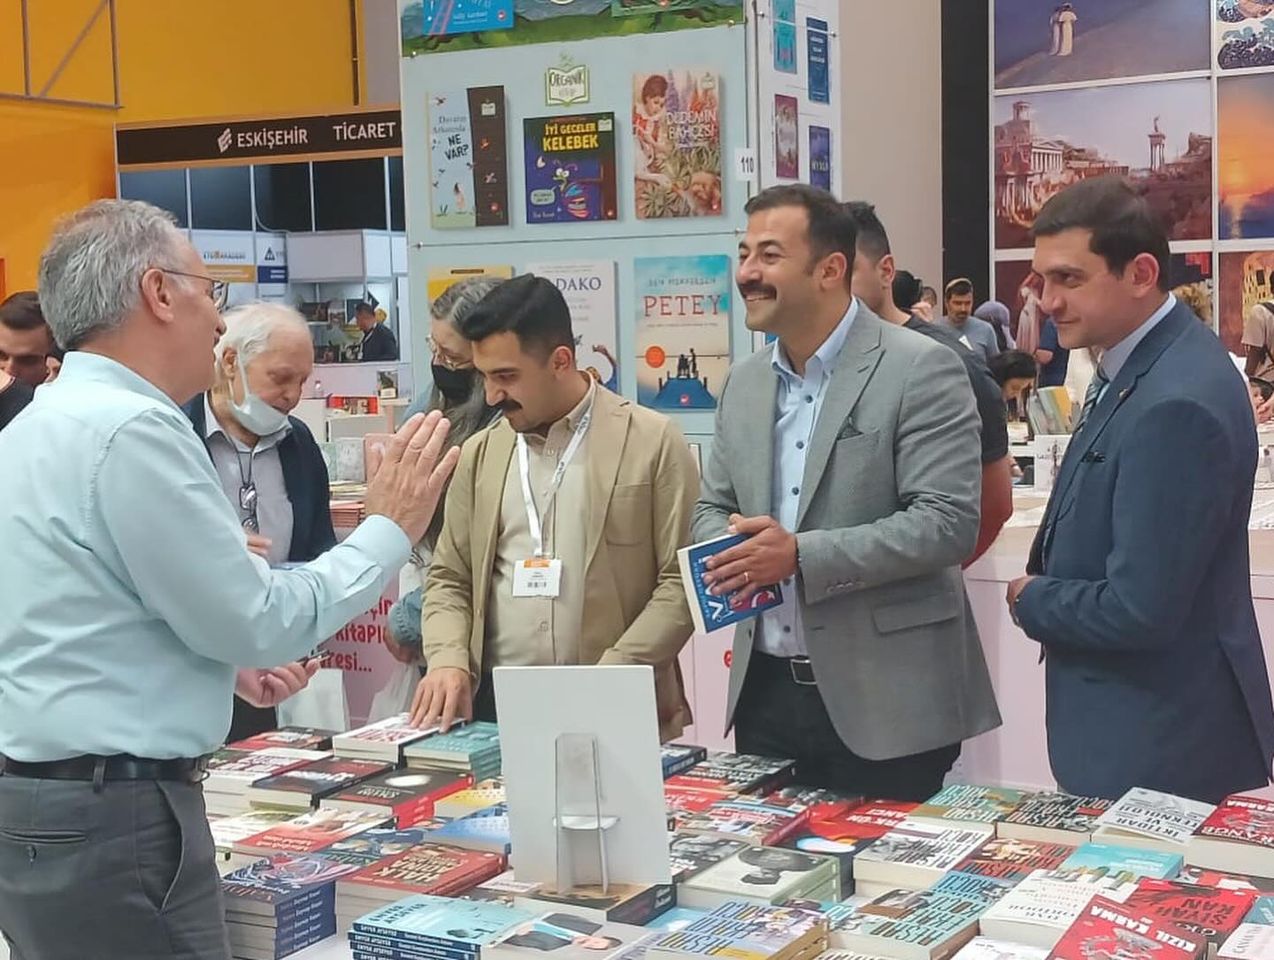 Eskişehir'de Düzenlenen 3. Kitap Fuarı Kültür ve Edebiyat Dünyasını Bir Araya Getirdi